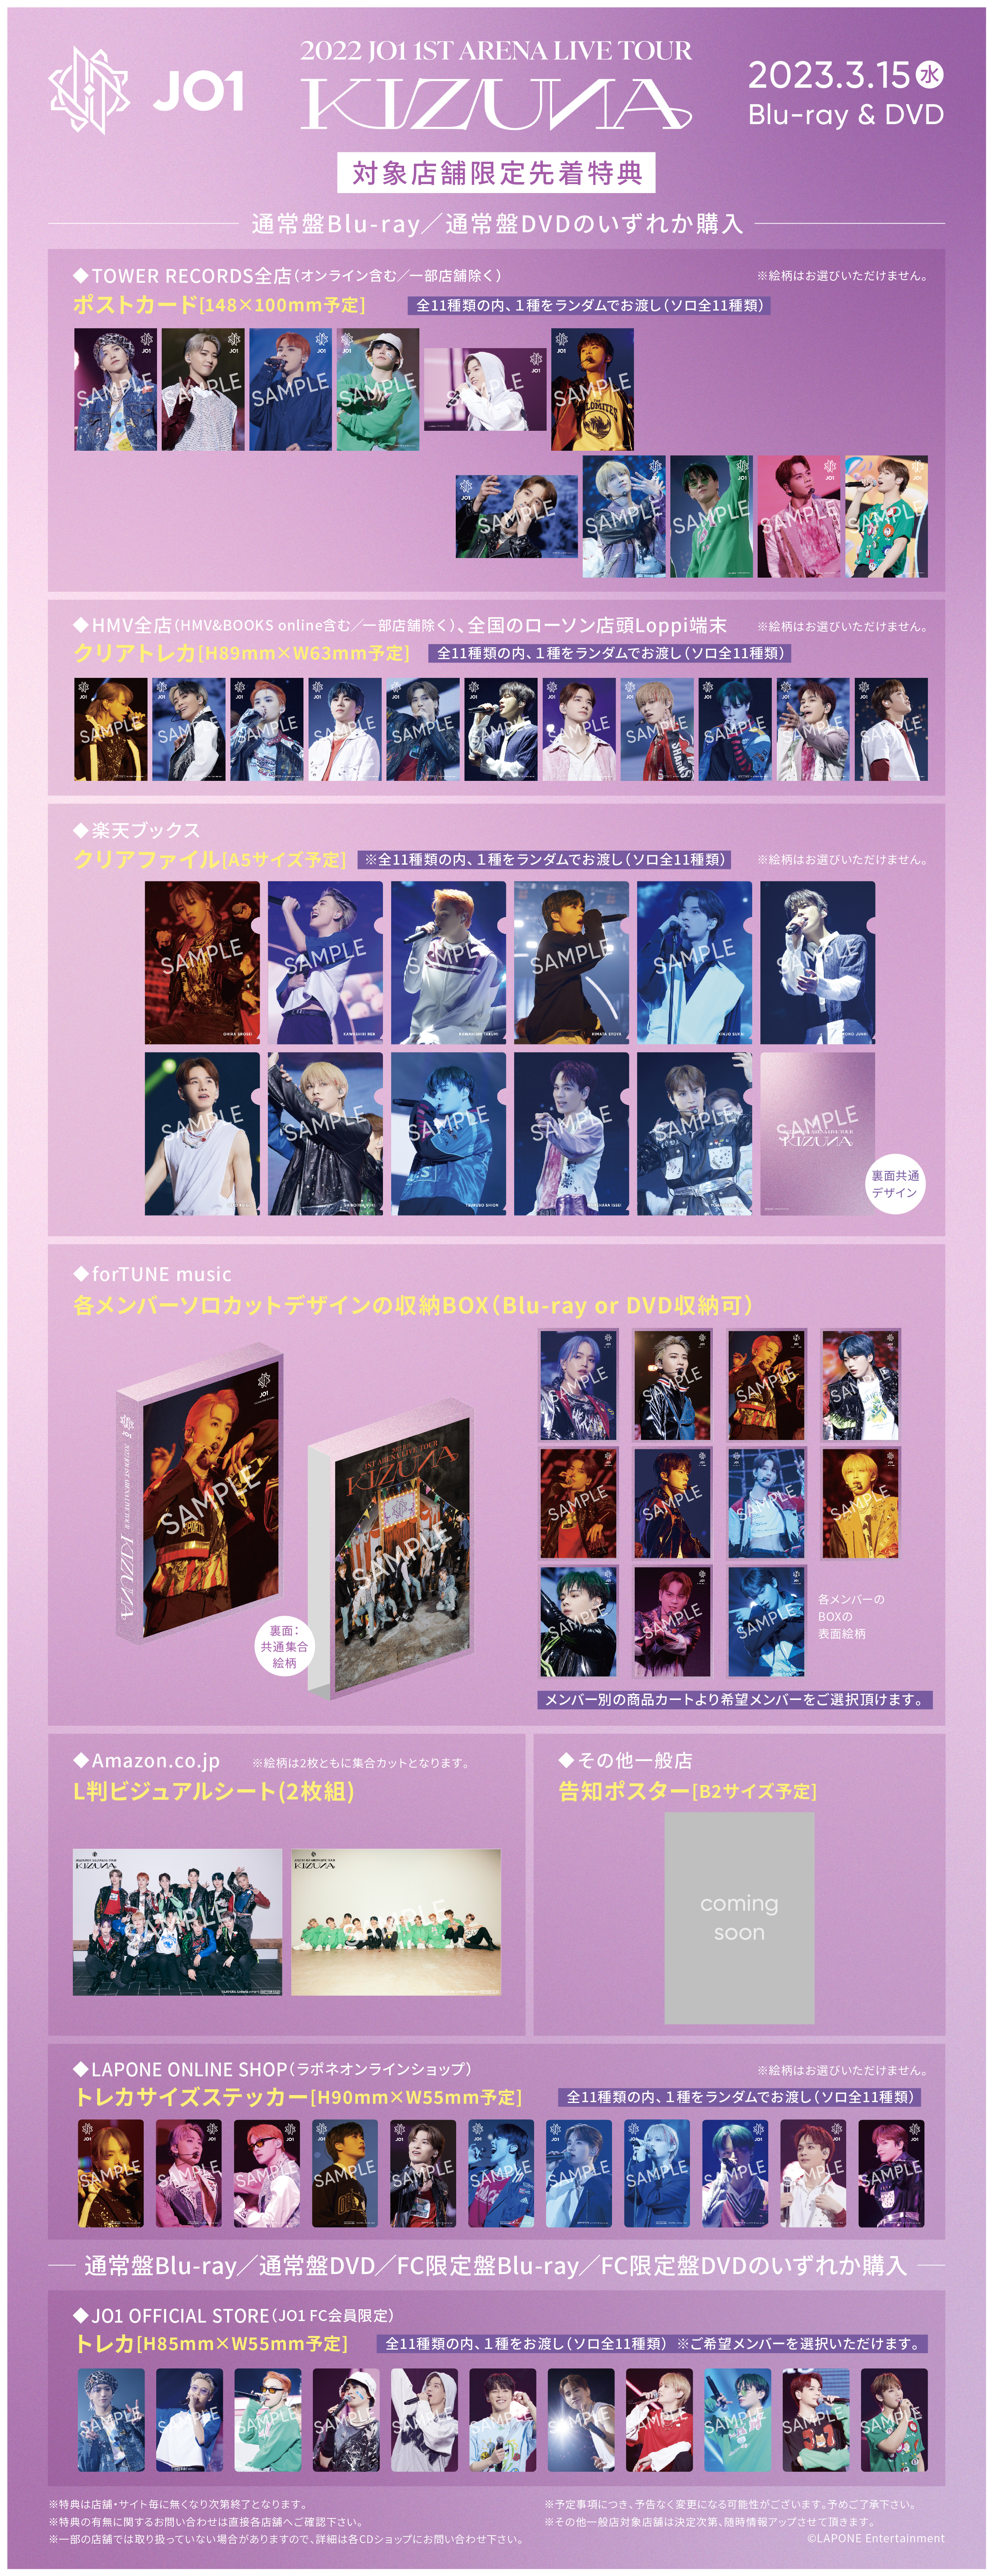 2022 JO1 1ST ARENA LIVE TOUR 'KIZUNA'」Blu-ray & DVDチェーン別購入 